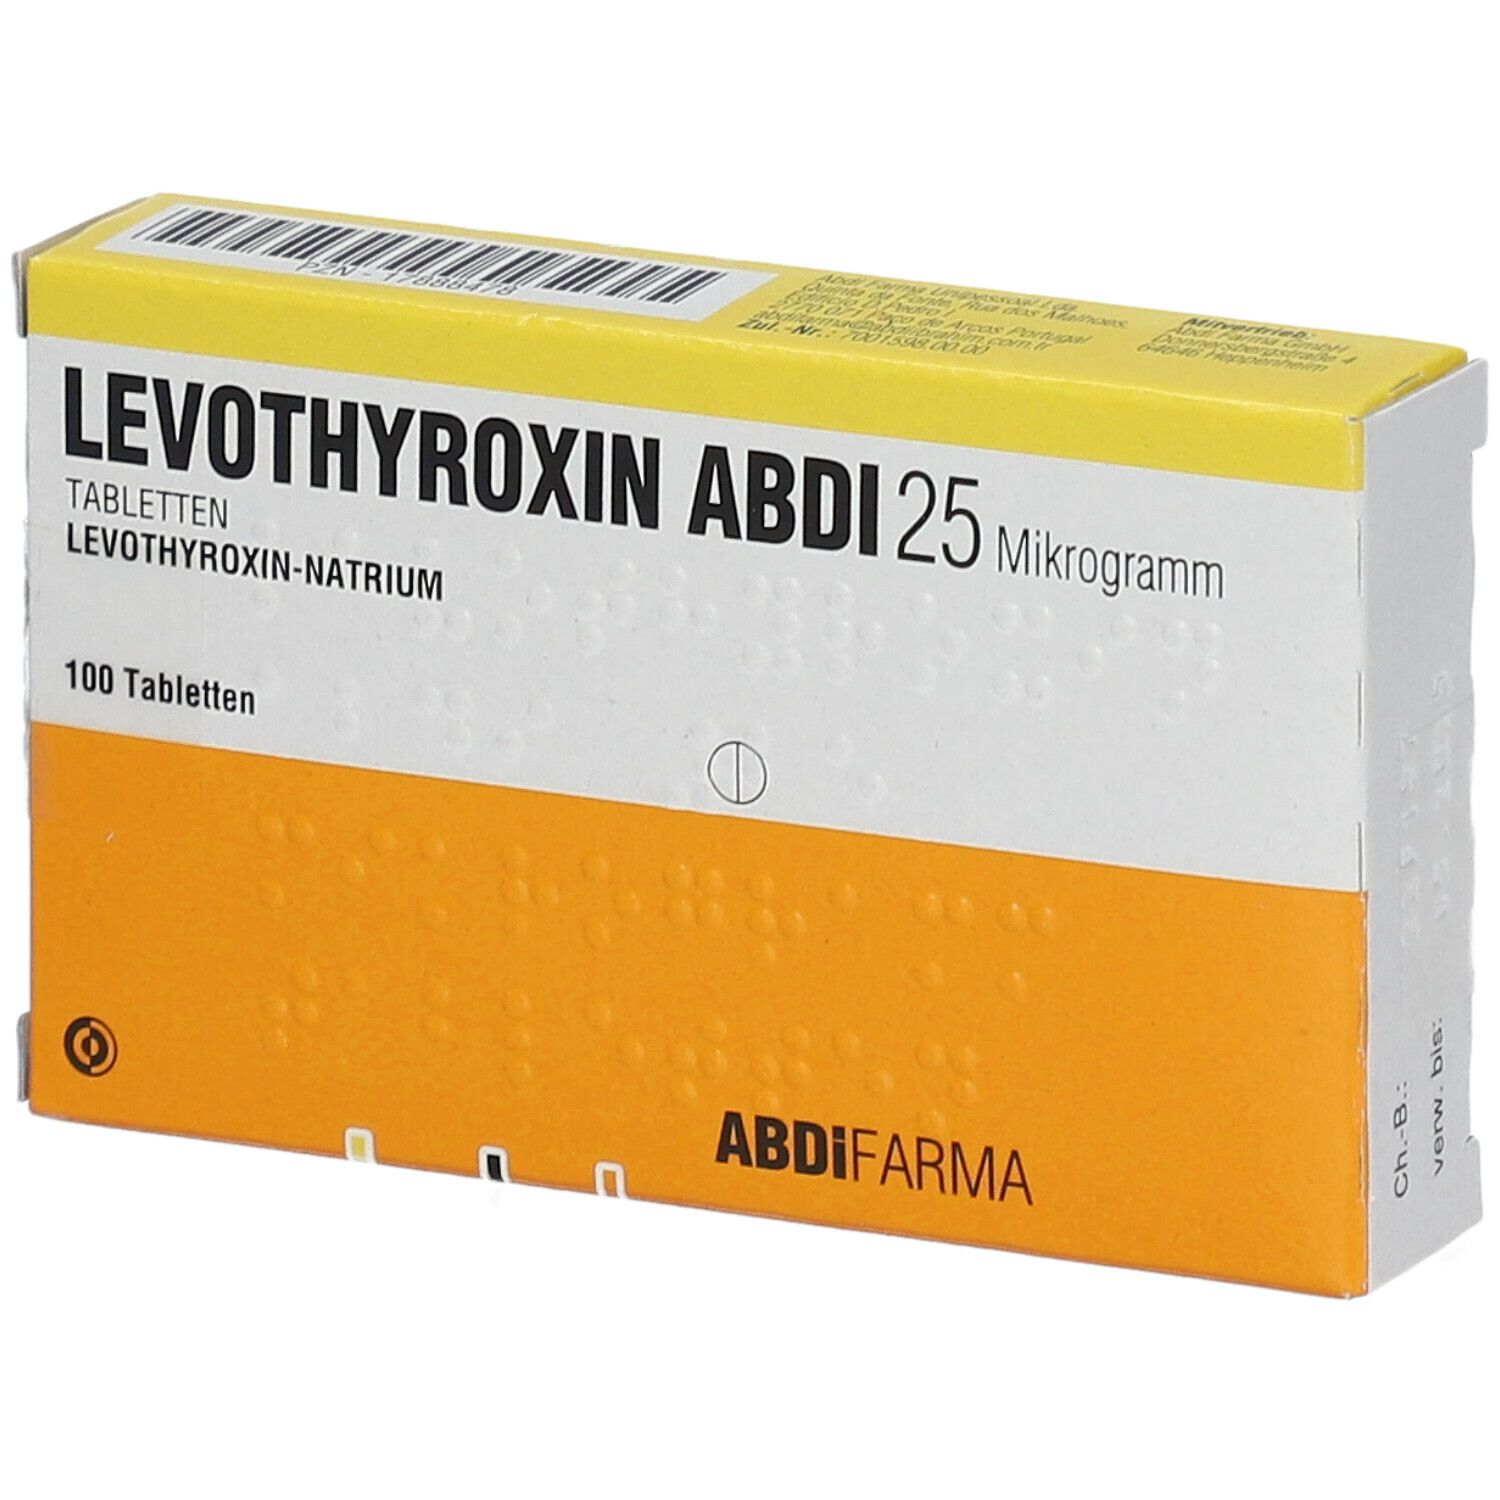 LEVOTHYROXIN Abdi 25 Mikrogramm Tabletten